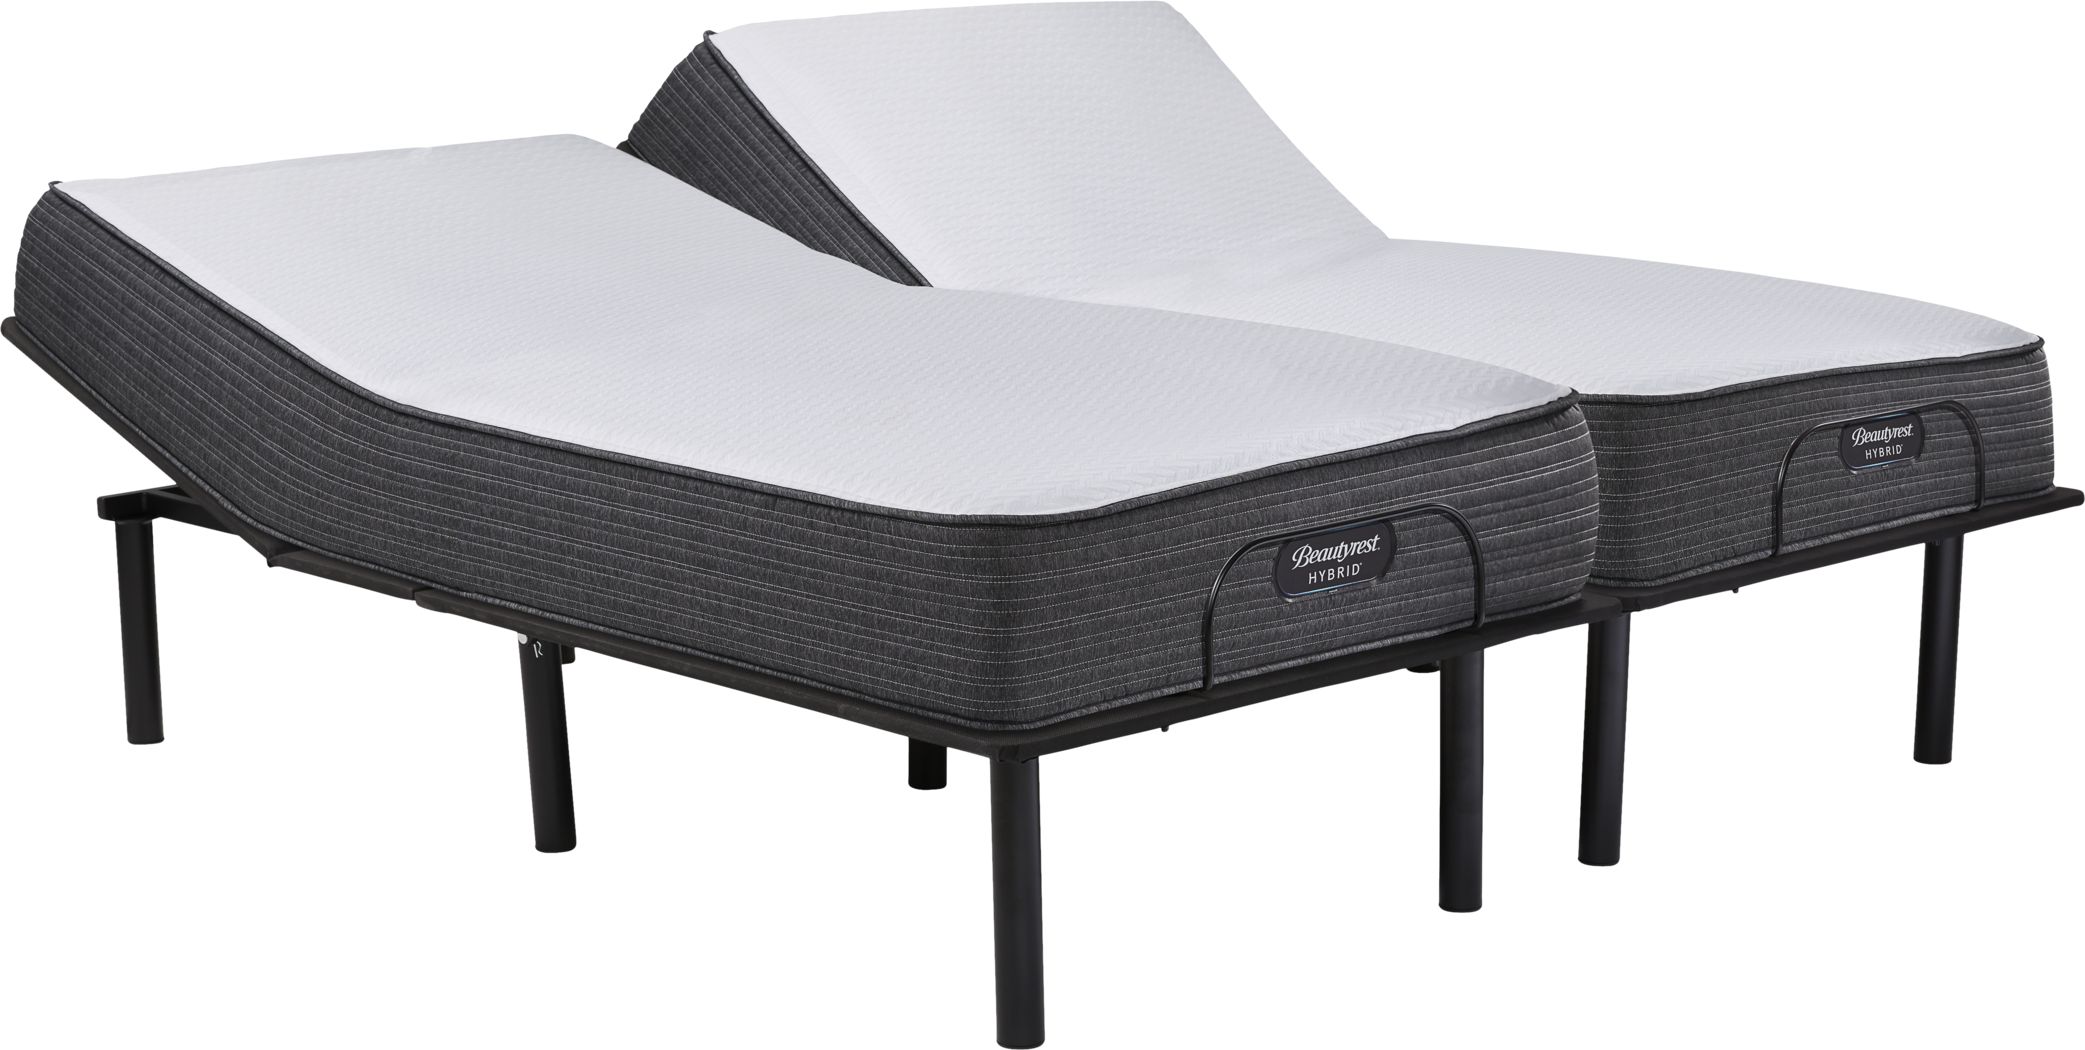 beautyrest hybrid mattress plano tx